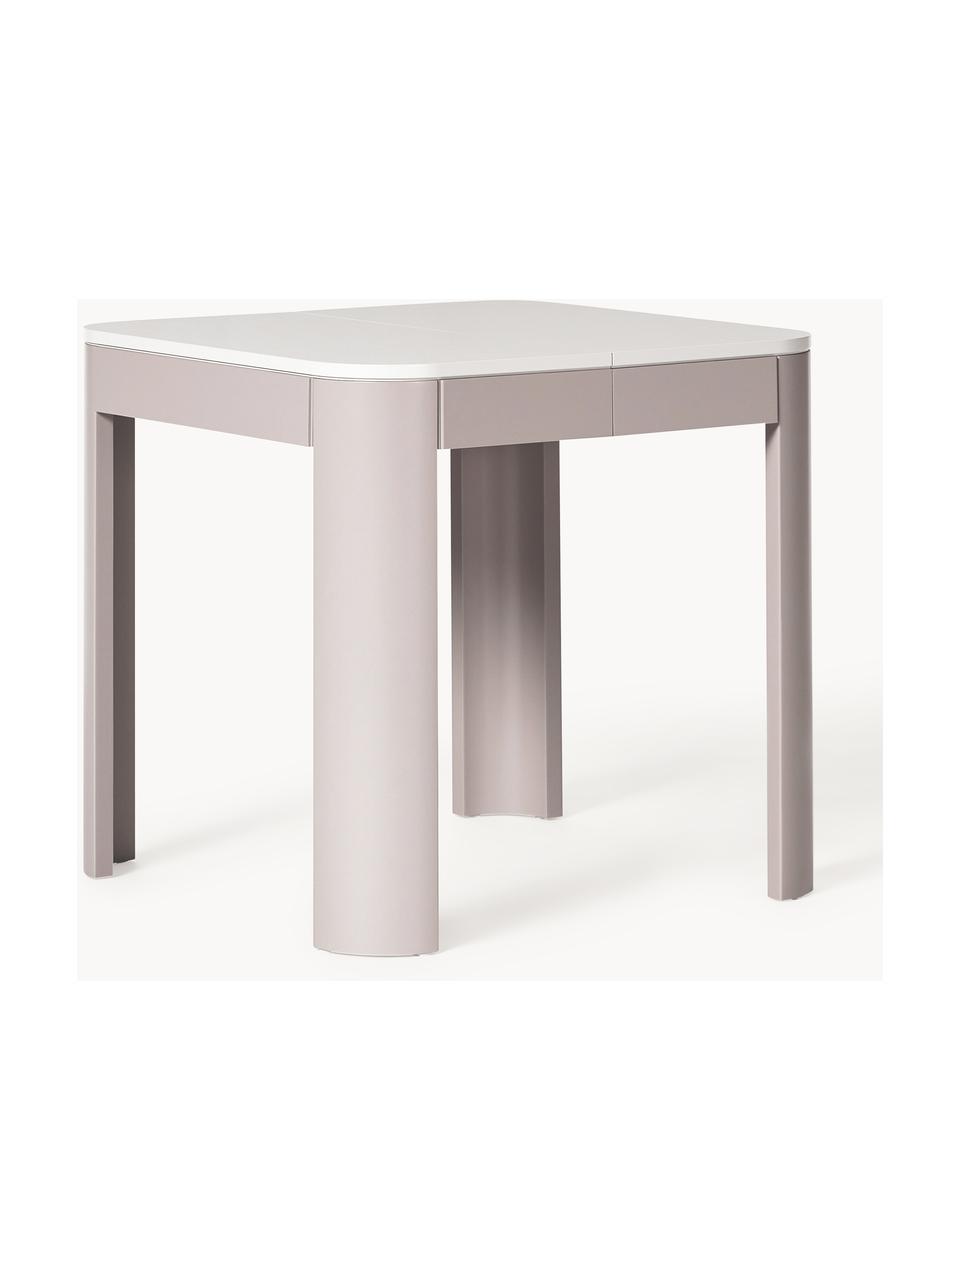 Rozkládací jídelní stůl Samos, různé velikosti, Světle béžová, světle šedá, Š 80/120 cm, H 80 cm